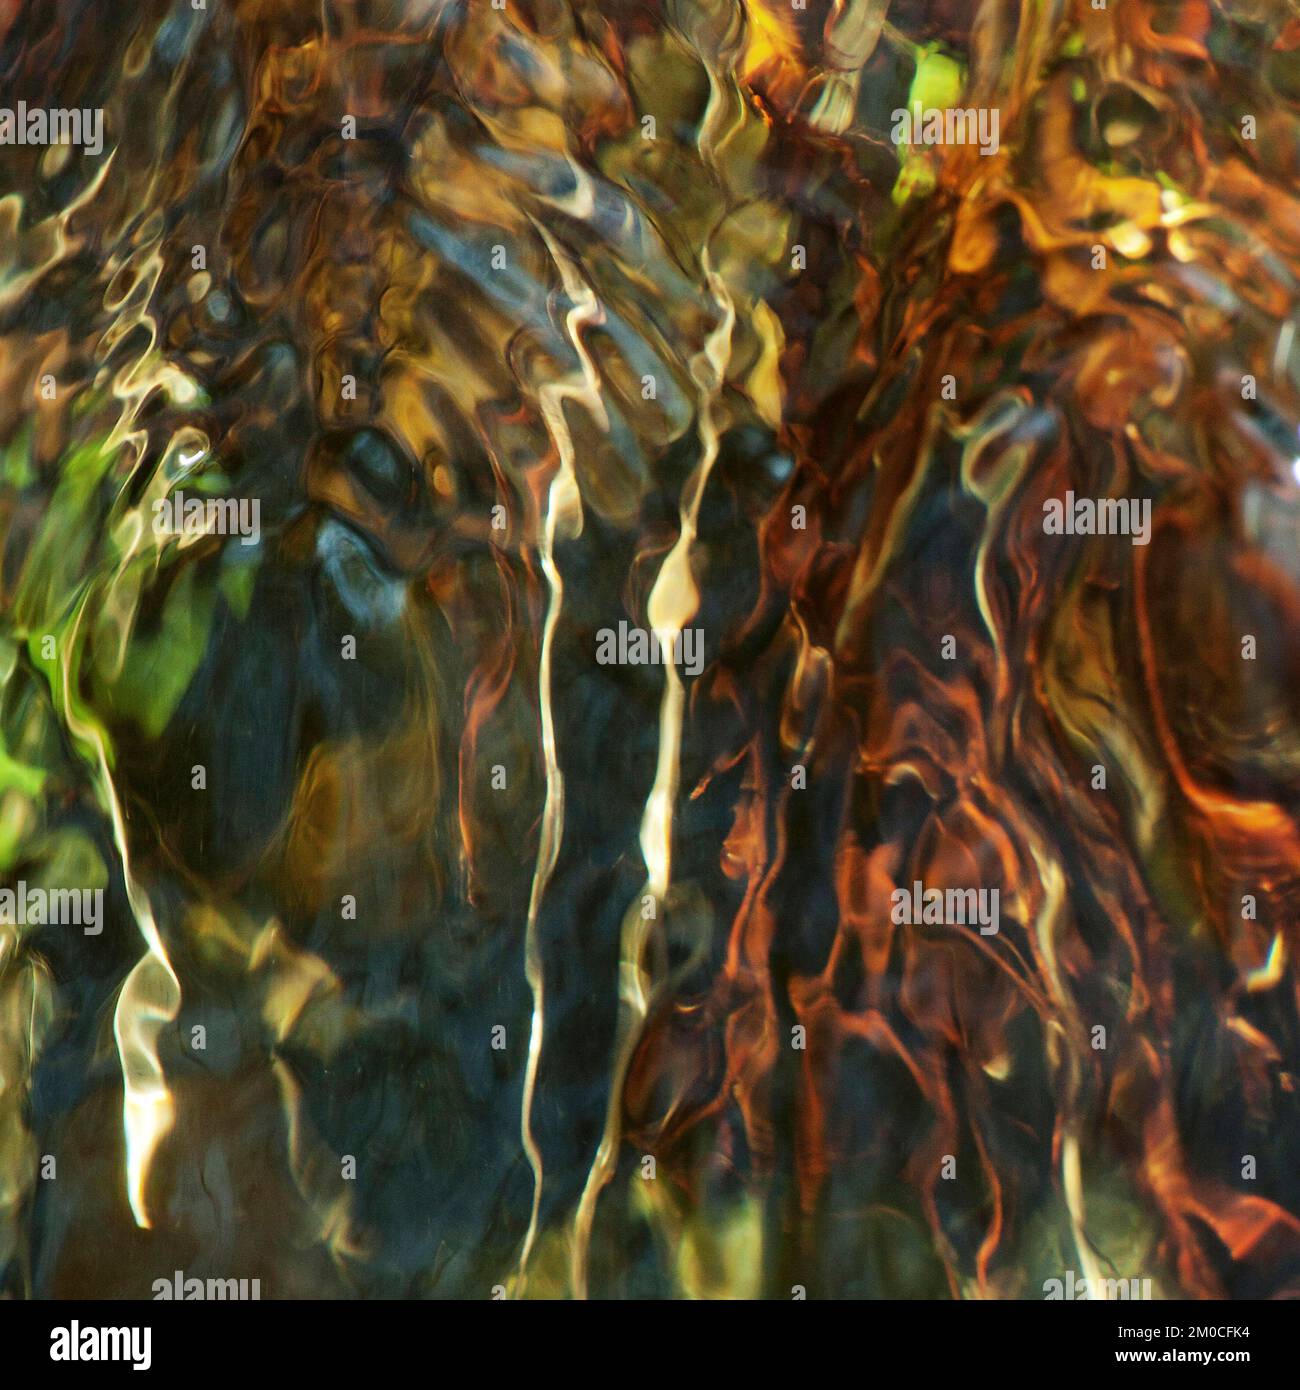 Fotografia astratta a colori, che mostra il movimento di acque Sher Brook affollate in un ambiente boschivo chiaro, l'immagine è un astratto colore Foto Stock